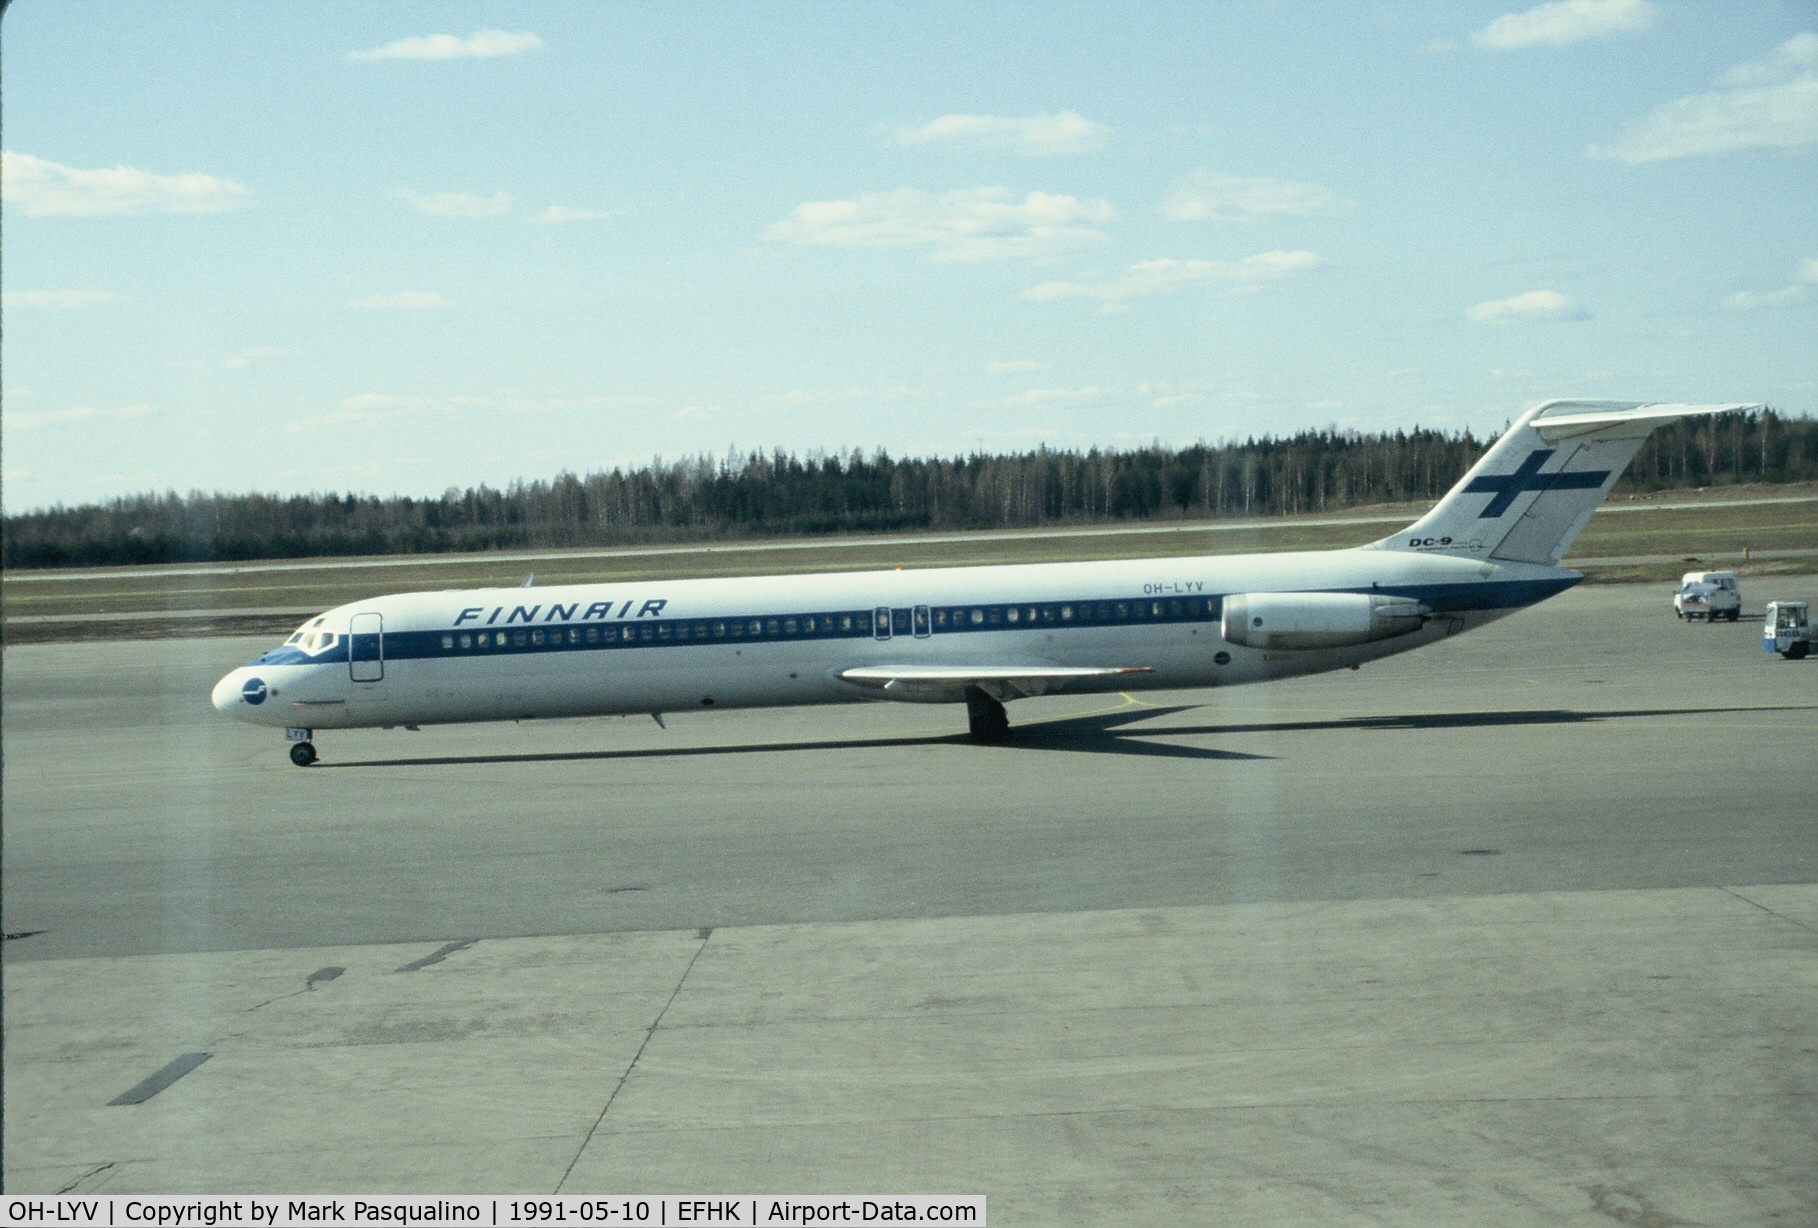 OH-LYV, 1978 McDonnell Douglas DC-9-51 C/N 47772/890, DC-9-51